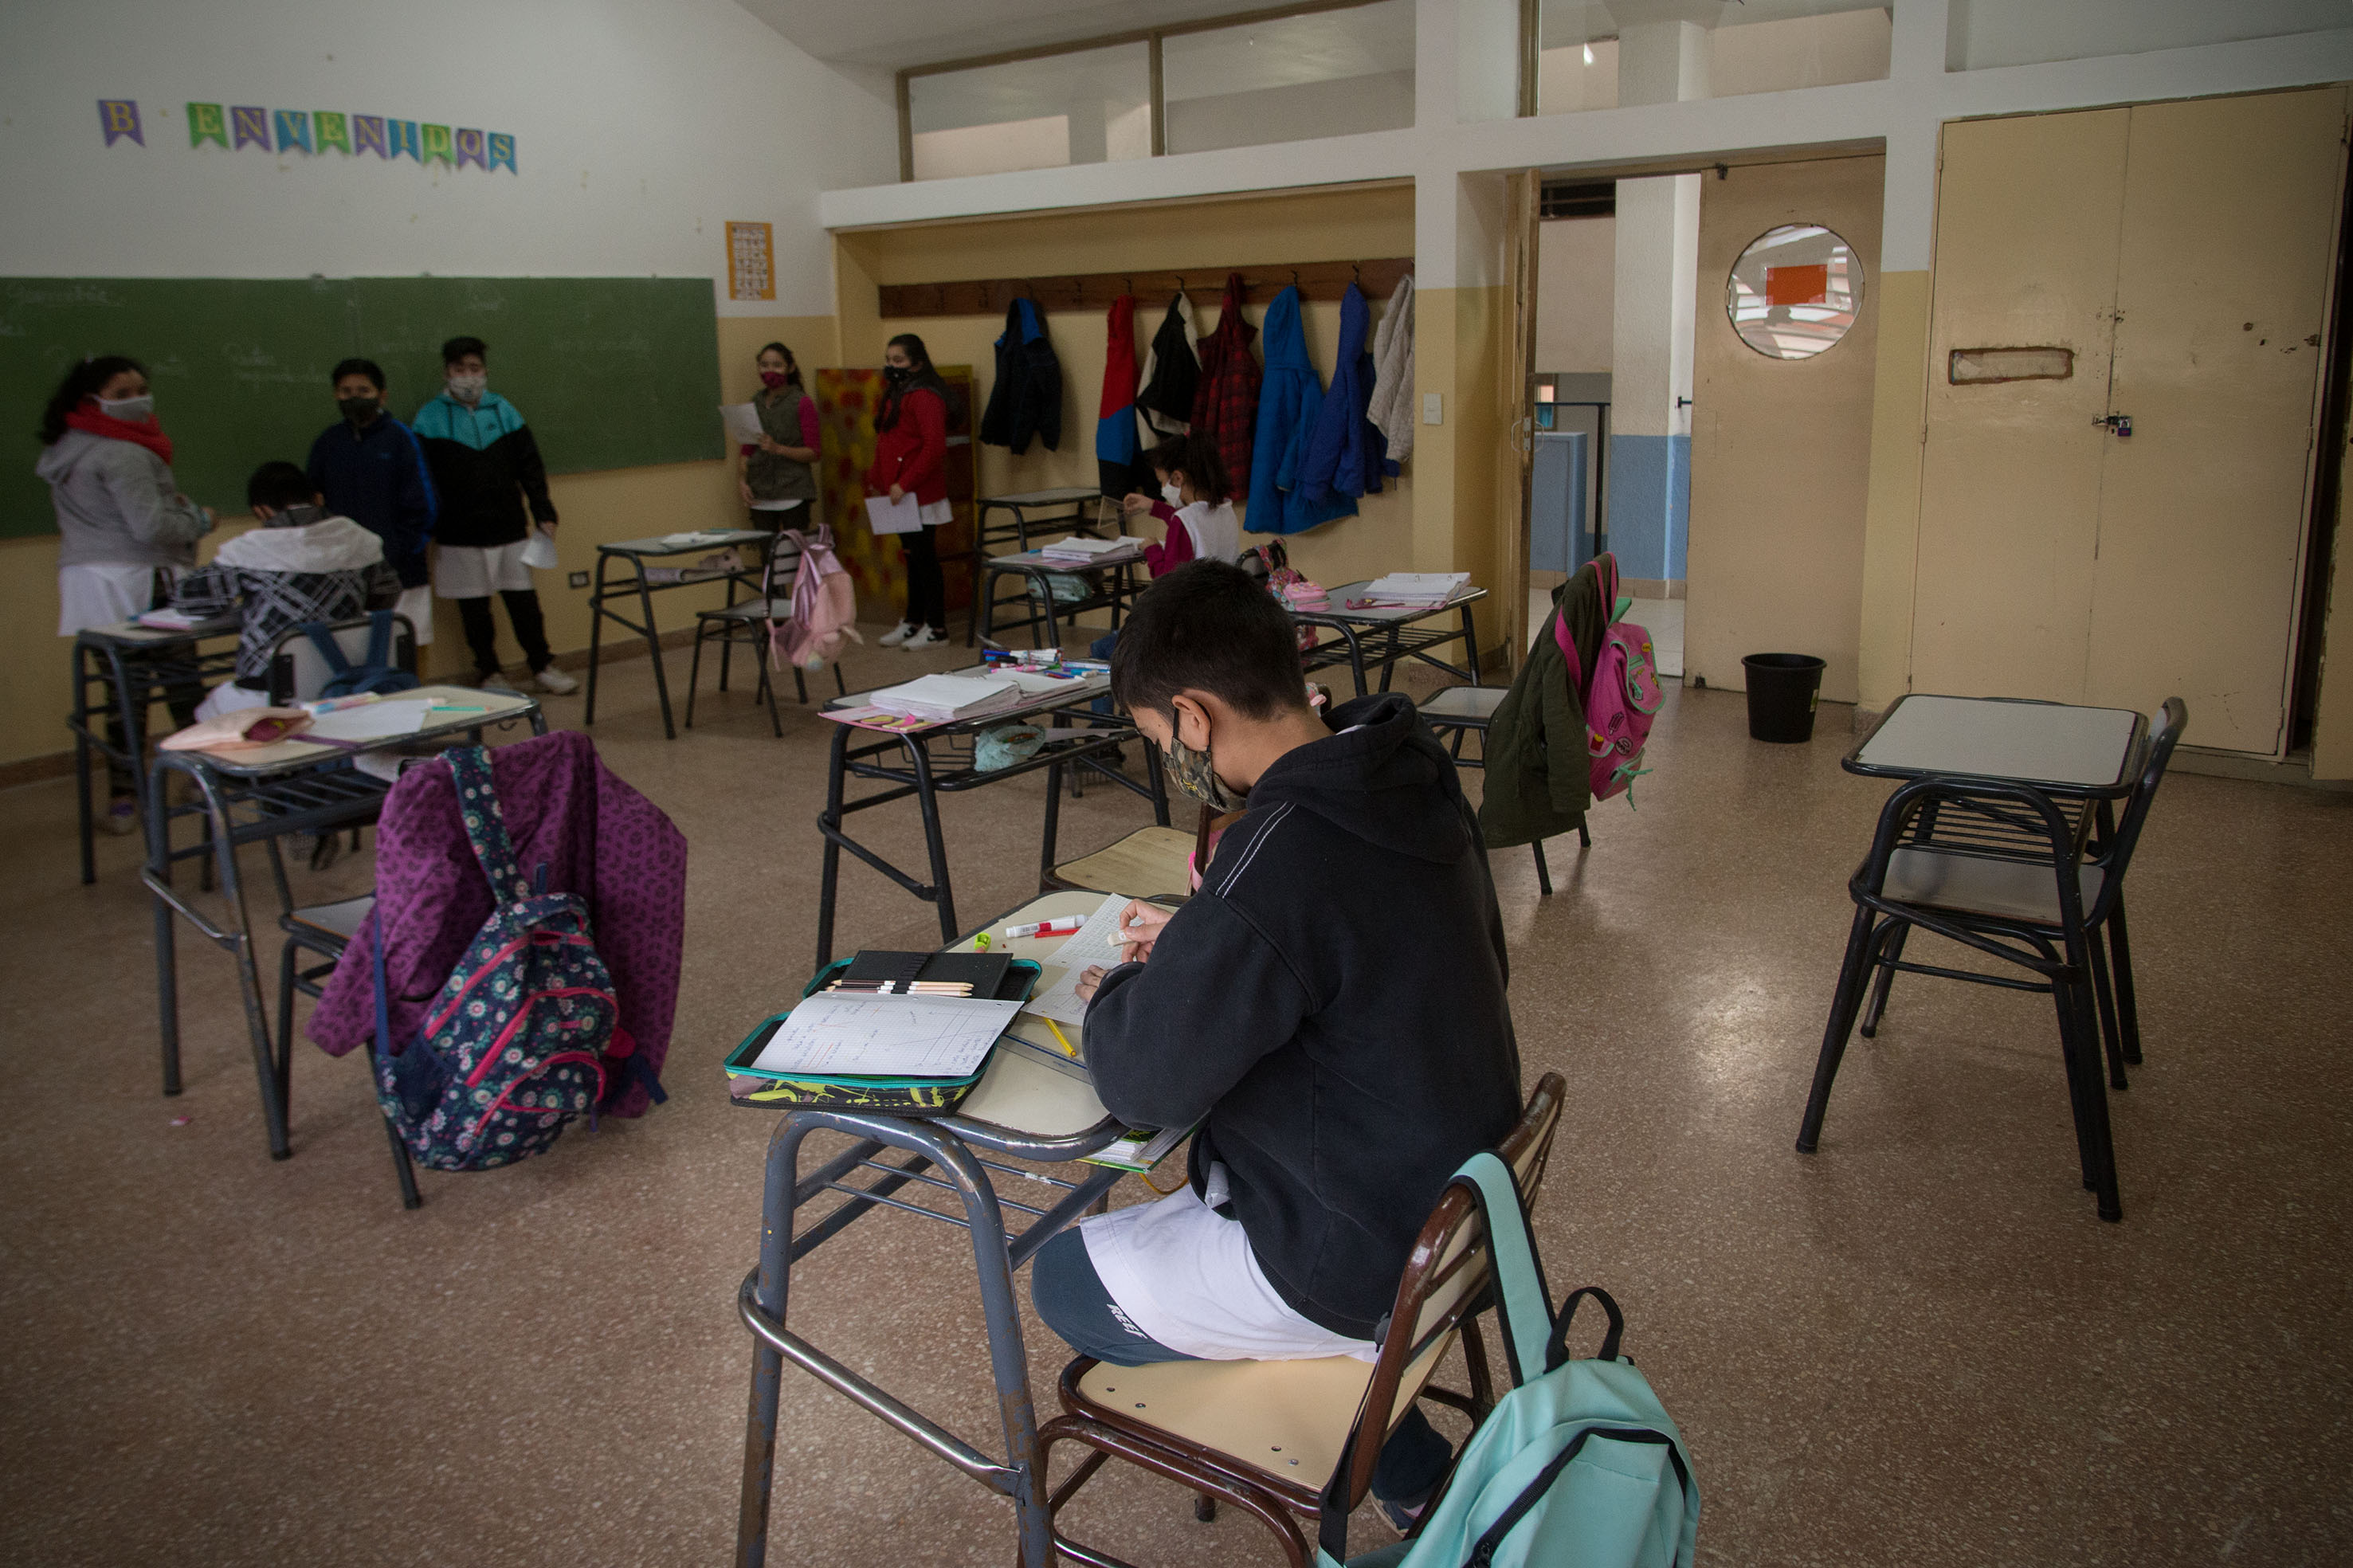 Desde el Consejo de Educación de la zona Andina, aseguran que se aprovechó el receso invernal de tres semanas para adecuar los edificios escolares y dejarlos listos para la vuelta de los alumnos, programada para el próximo lunes. Foto: archivo